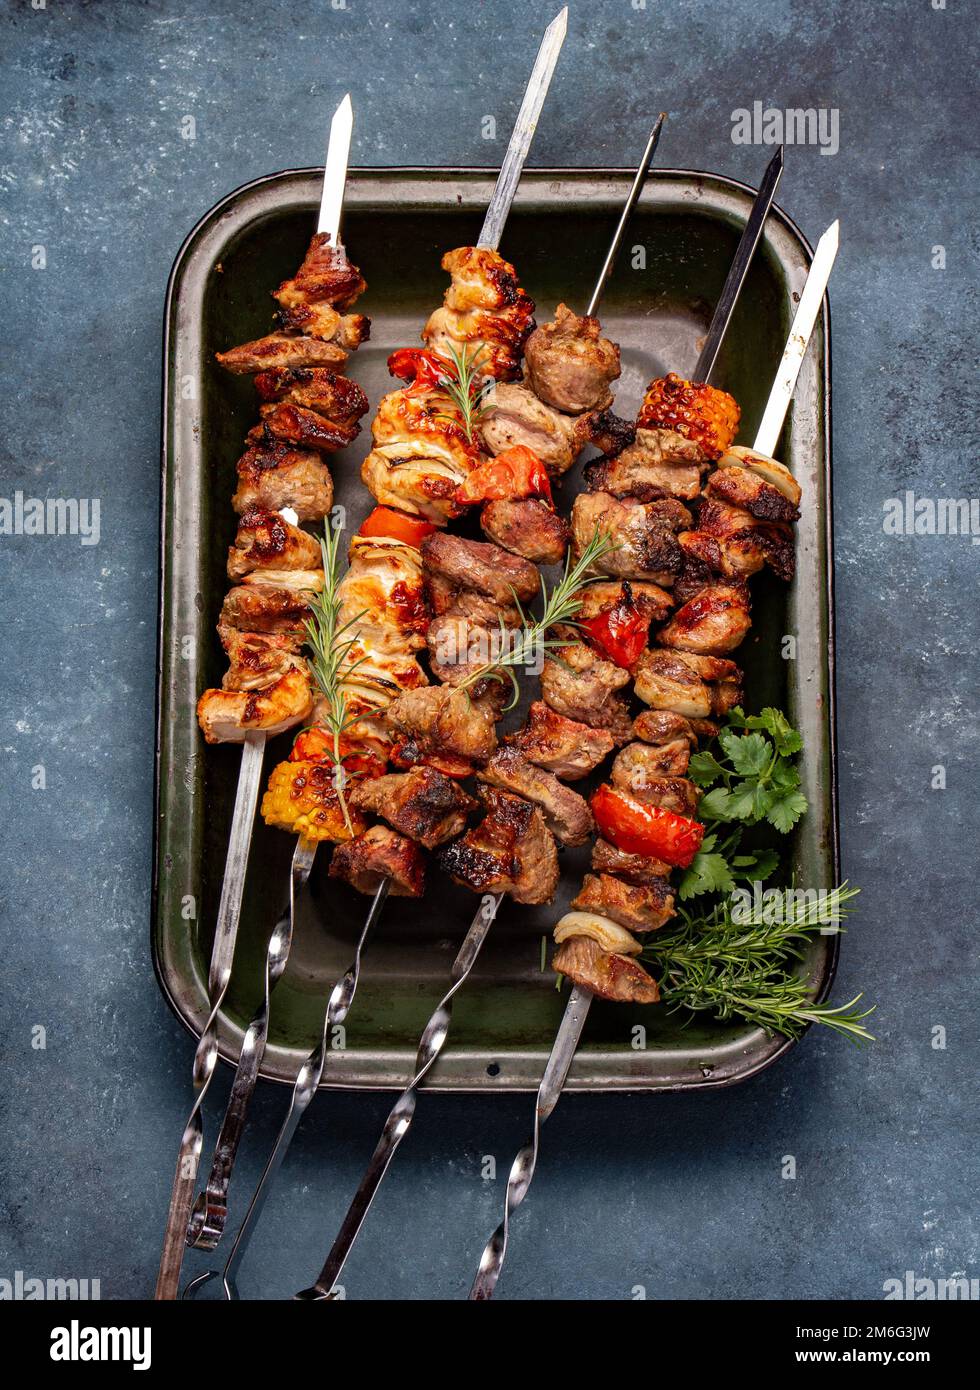 Barbecue carne di maiale alla griglia, pollo e spiedini di verdure sul vassoio Vista dall'alto, disposizione piatta. Foto Stock